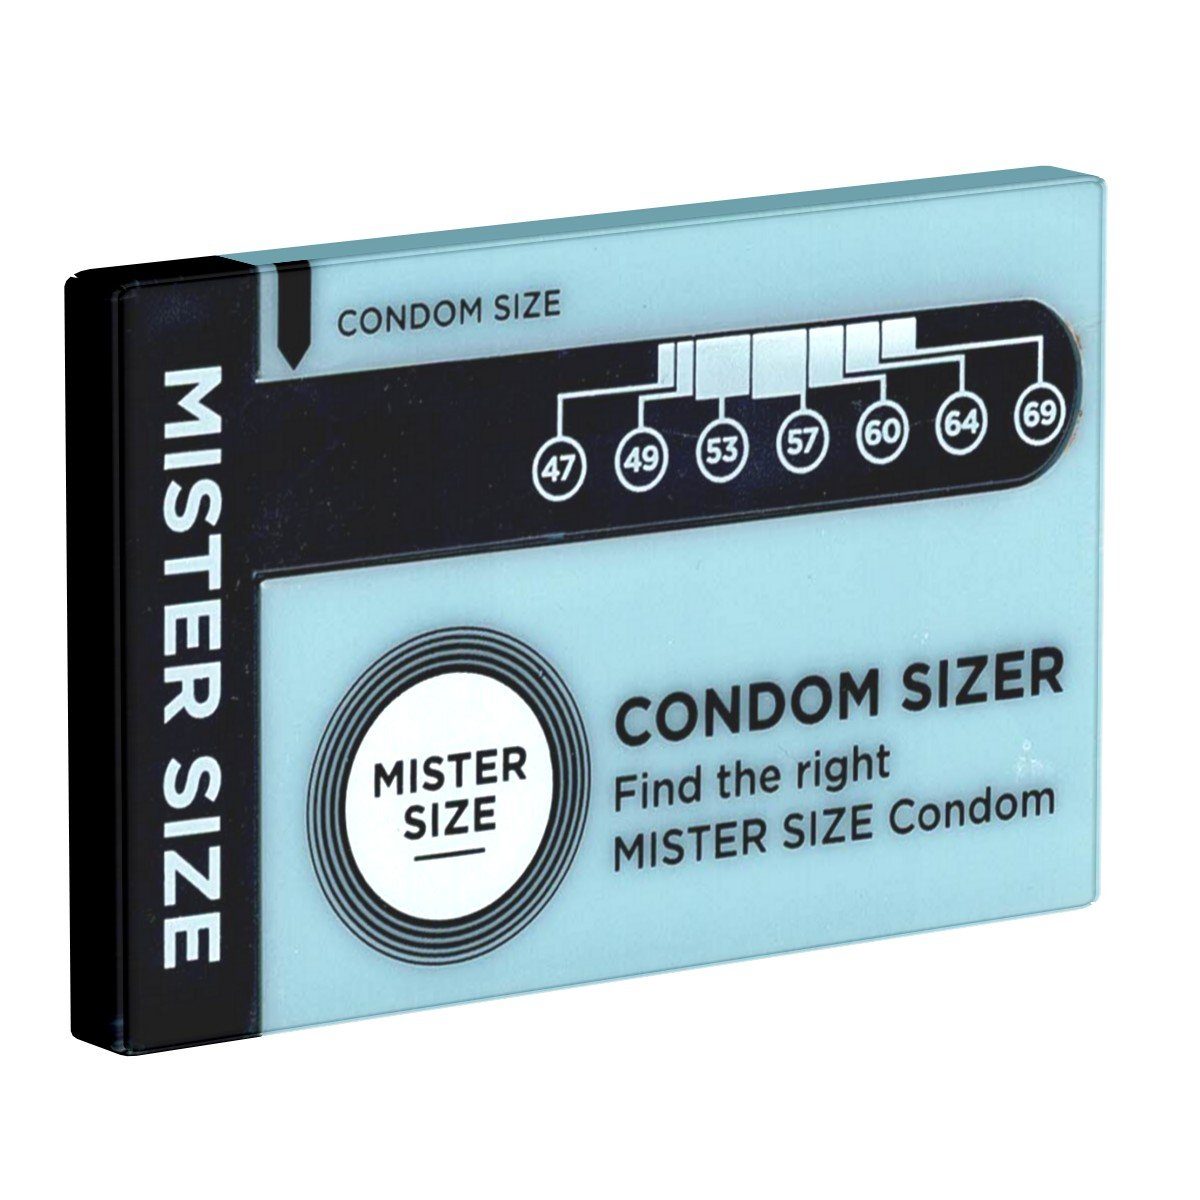 Sie Condom St., Deutsch, SIZE Ihre Sprache: Kondomgröße jetzt Kondome MISTER Sizer bestimmen 1